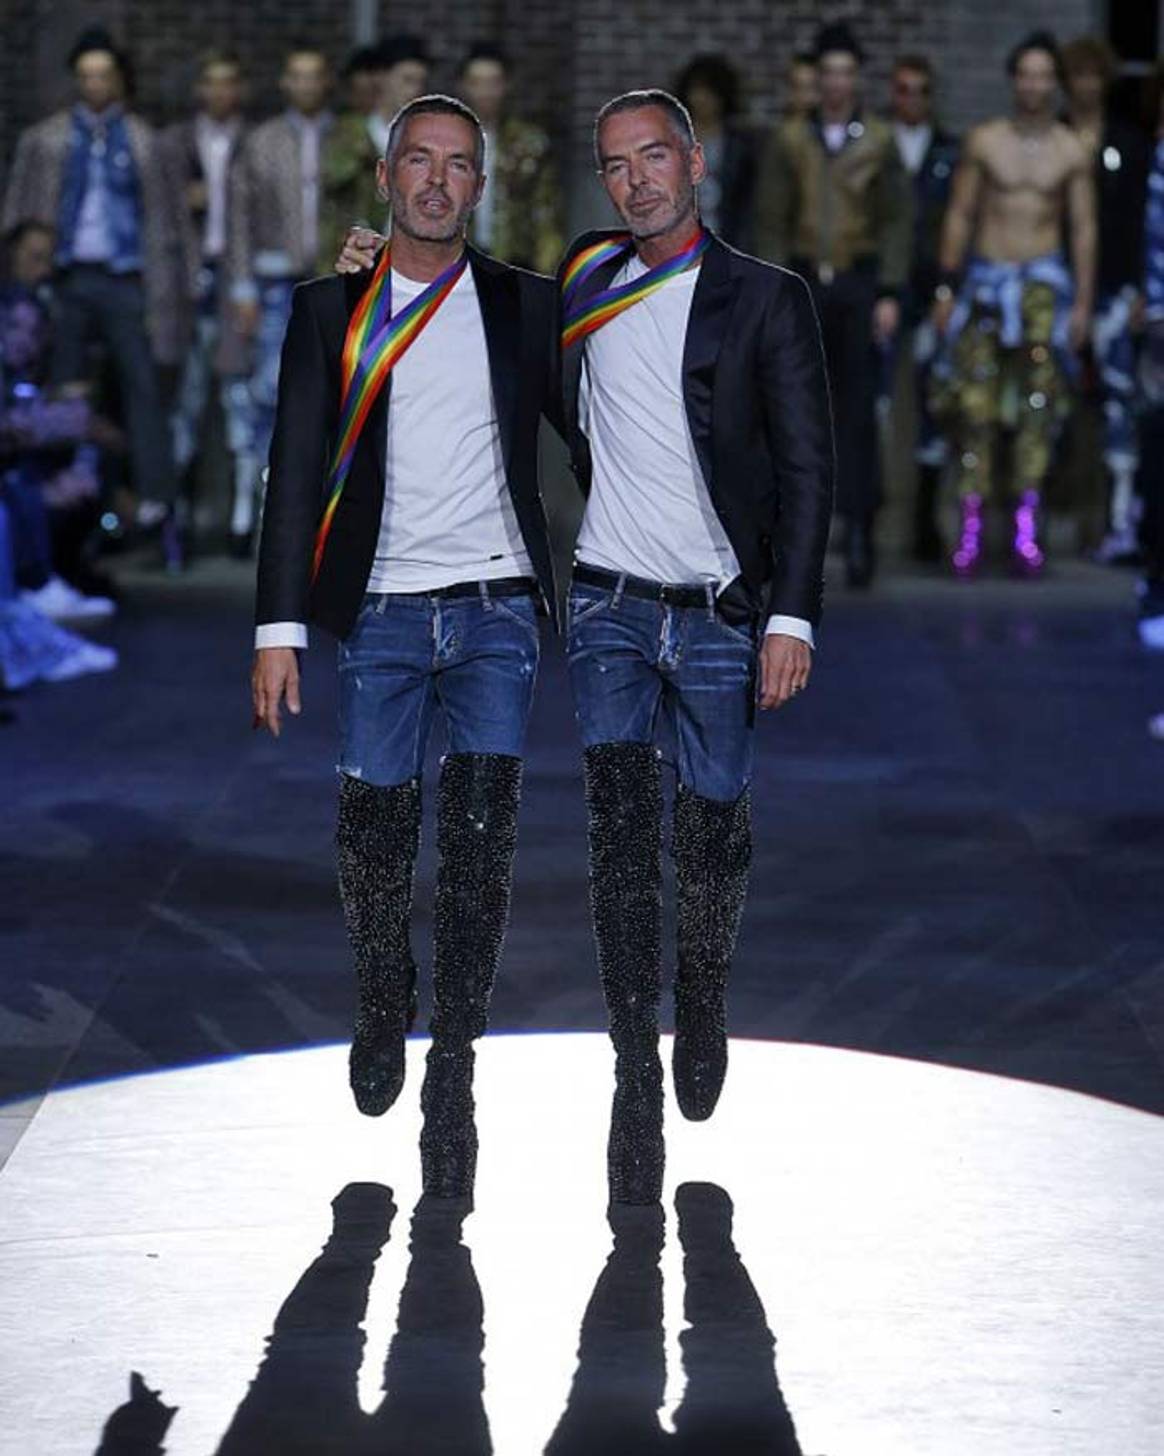 El estilo unisex y la naturaleza marcan la Semana de la Moda de Milán